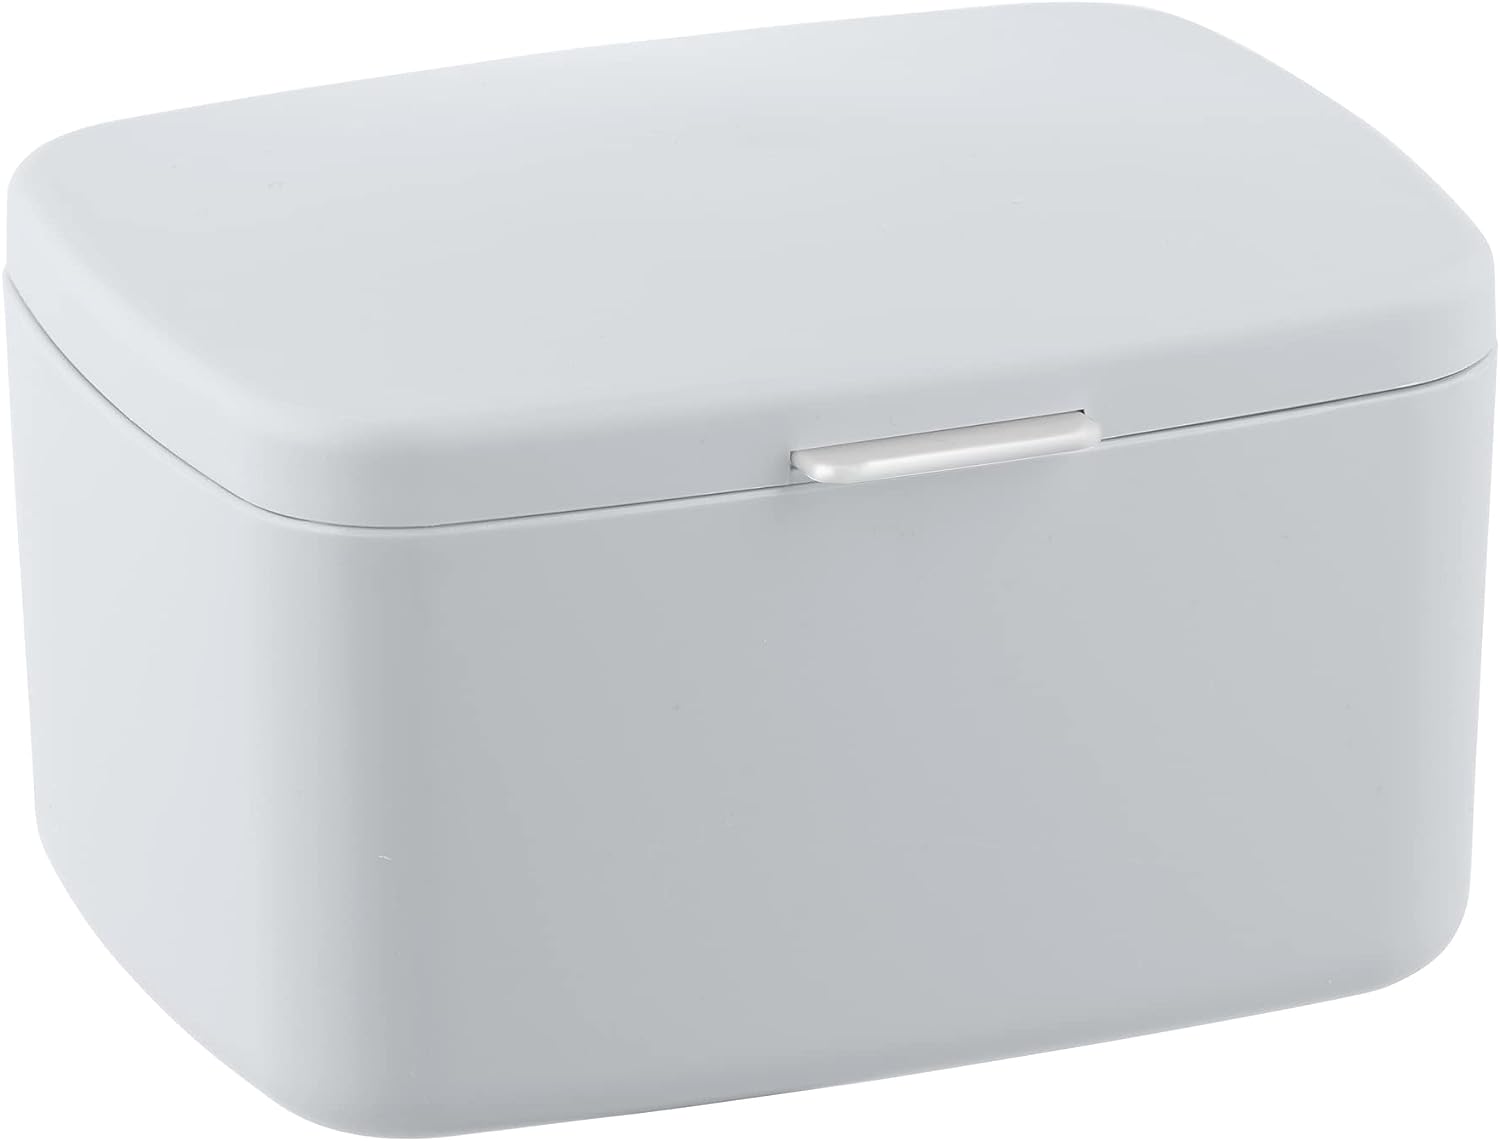 WENKO Badbox Barcelona, universell einsetzbare Box mit Deckel zur Aufbewahrung von Utensilien in Bad, Küche & Haushalt, aus bruchsicherem Spezialkunststoff, BPA-frei, 19,5 x 11 x 16 cm, Weiß